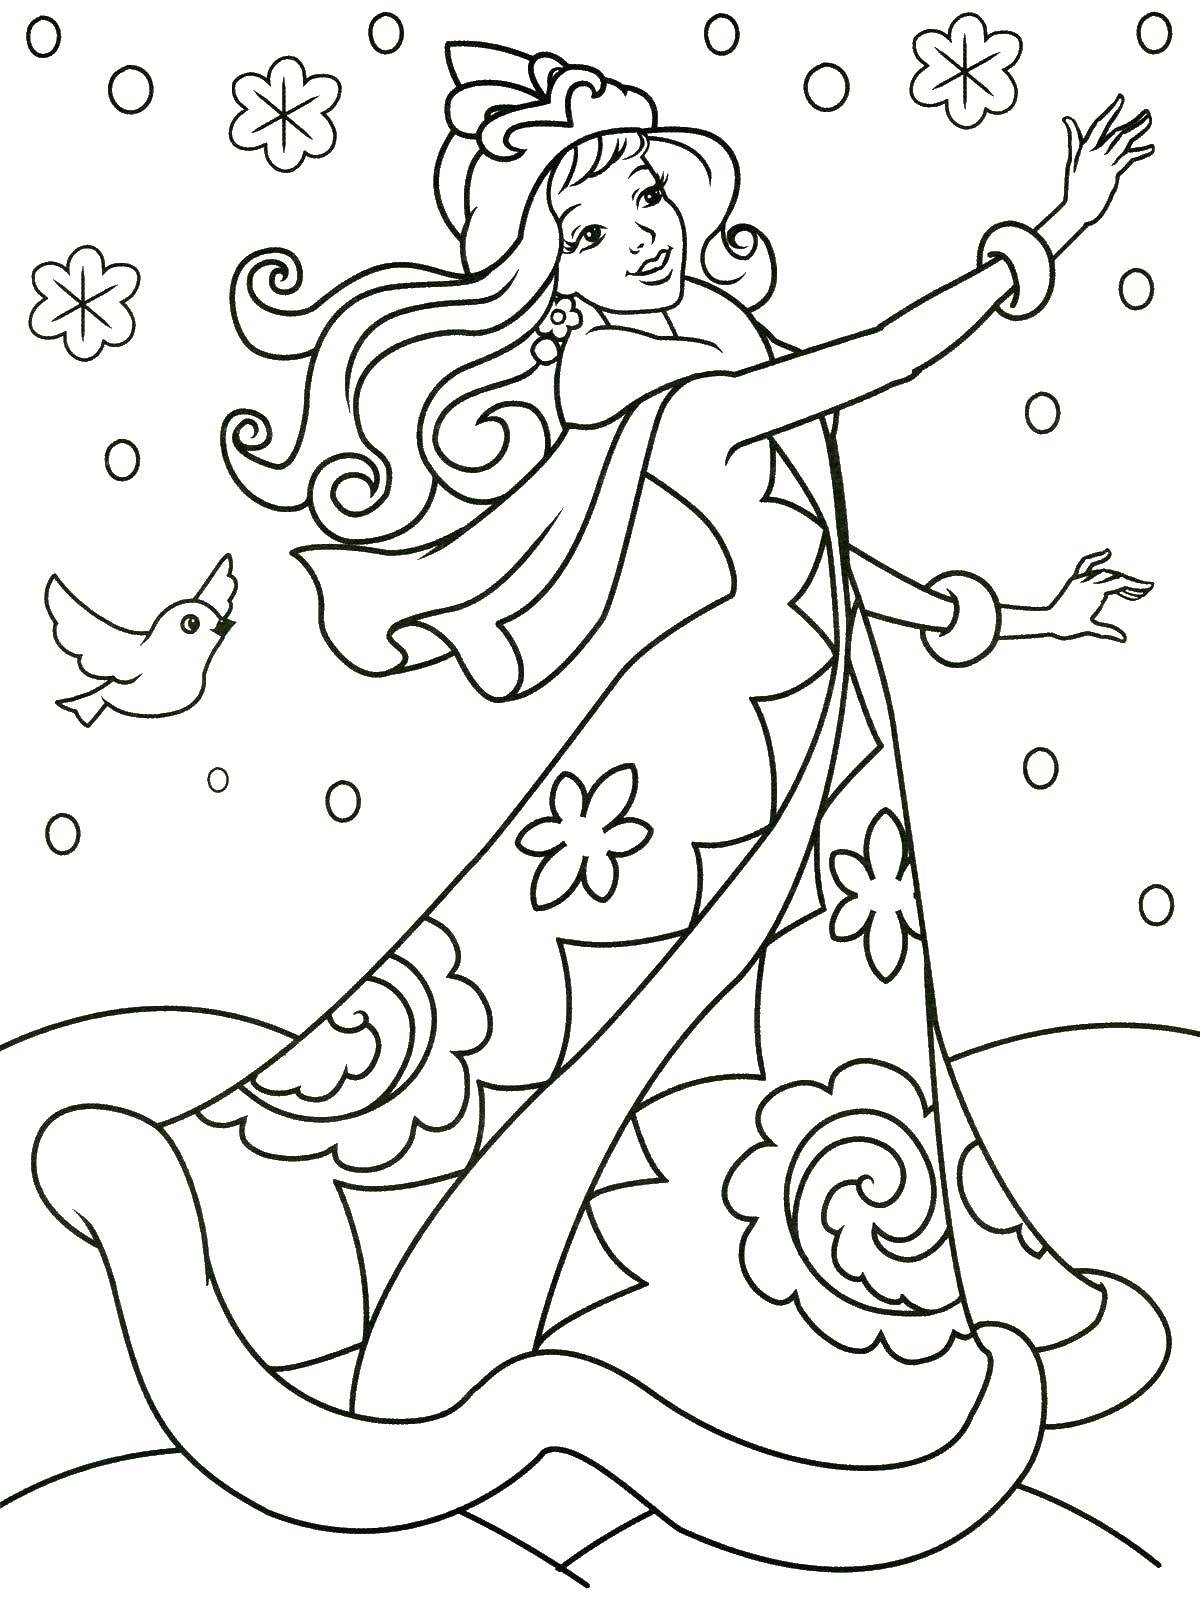 Coloring Snow Princess. Category Princess. Tags:  Princess, winter, snow.